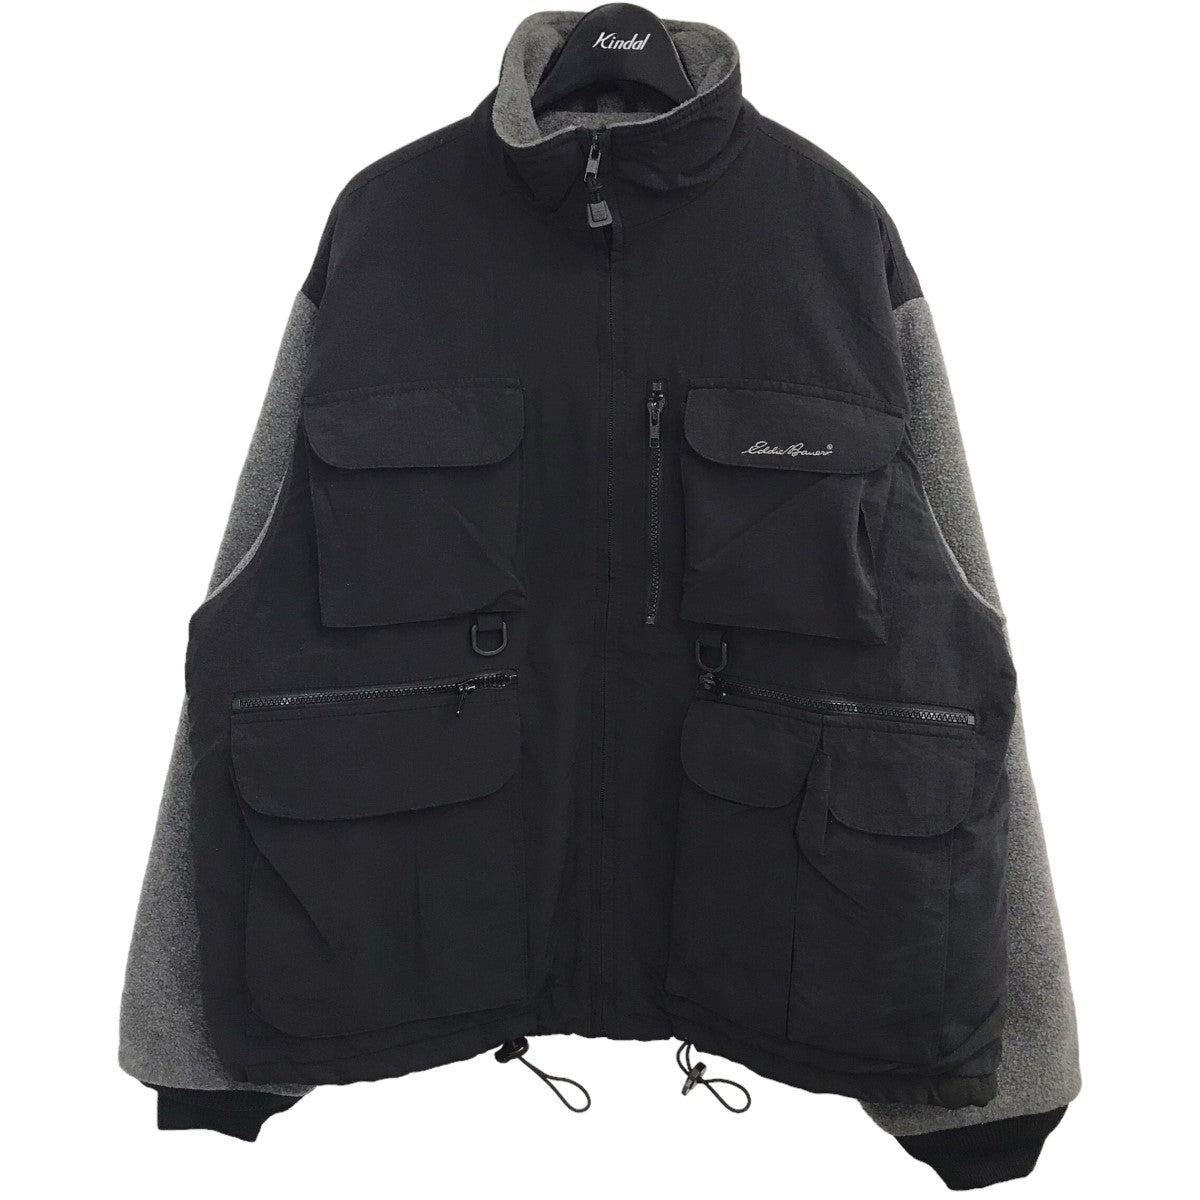 こちらはよくあるSpoEddie Bauer Fishing fleece jacket 90’s